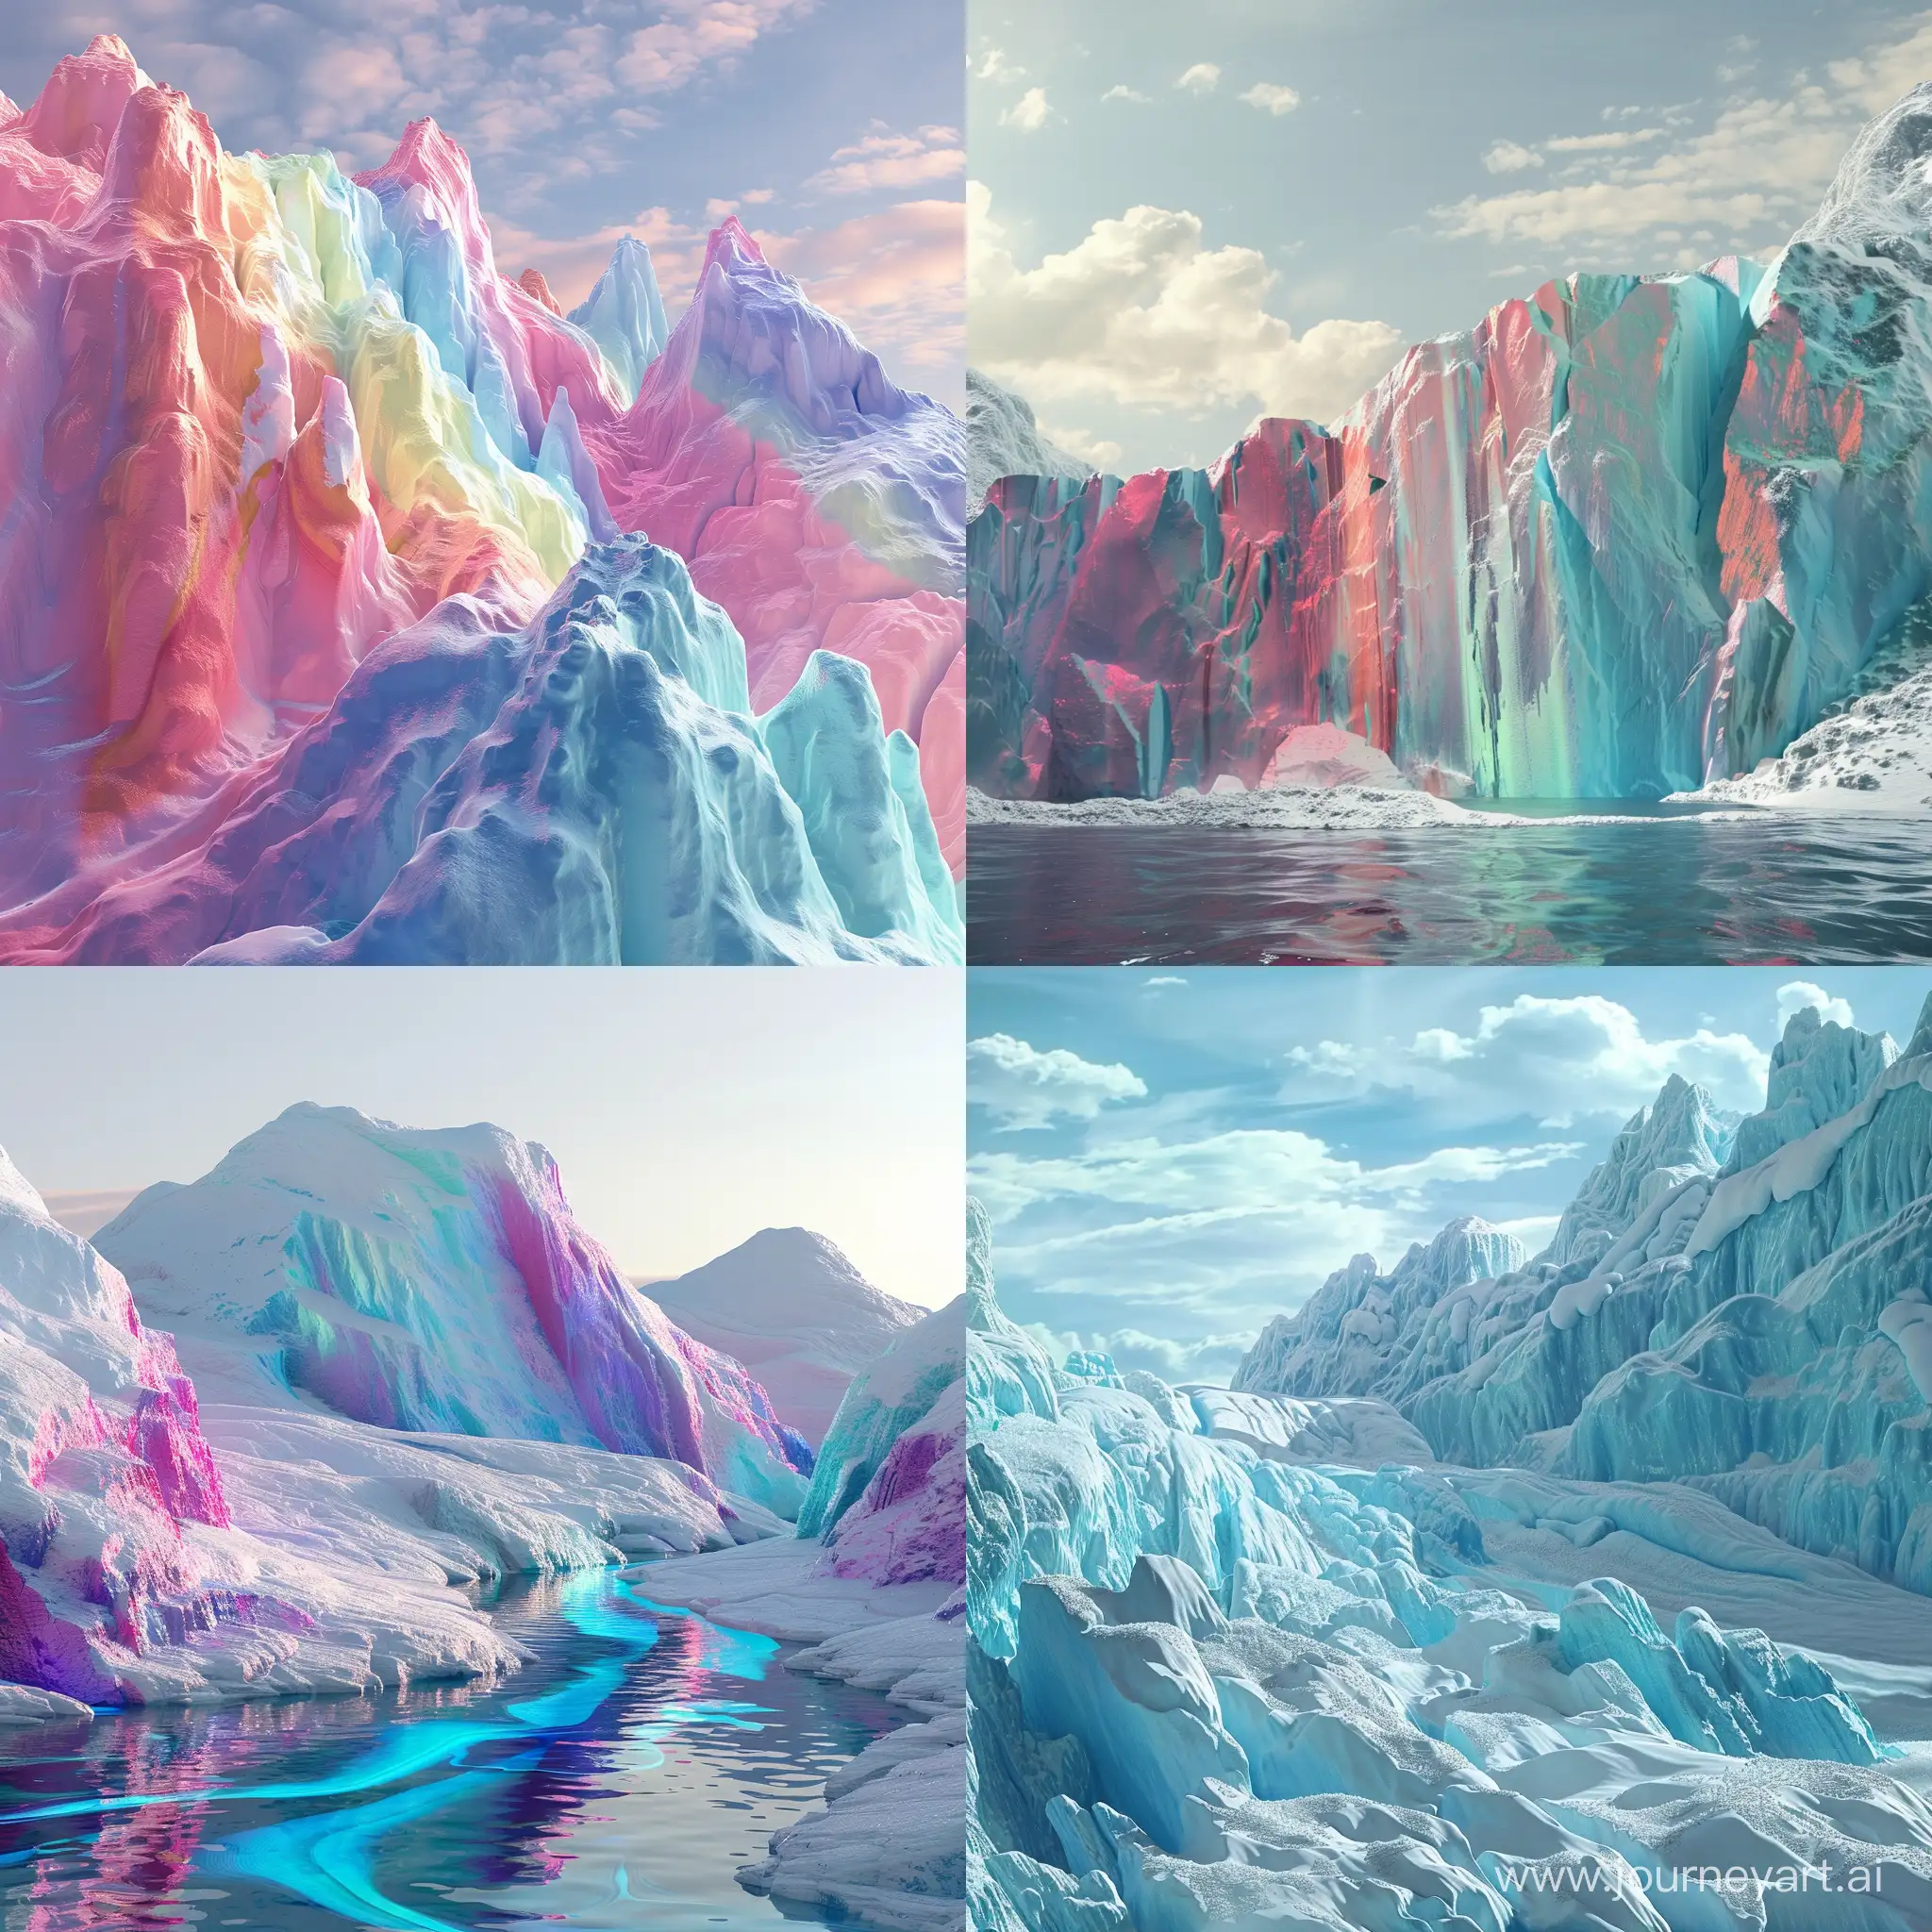 Vibrant-3D-Animation-of-Massive-MultiColored-Glaciers